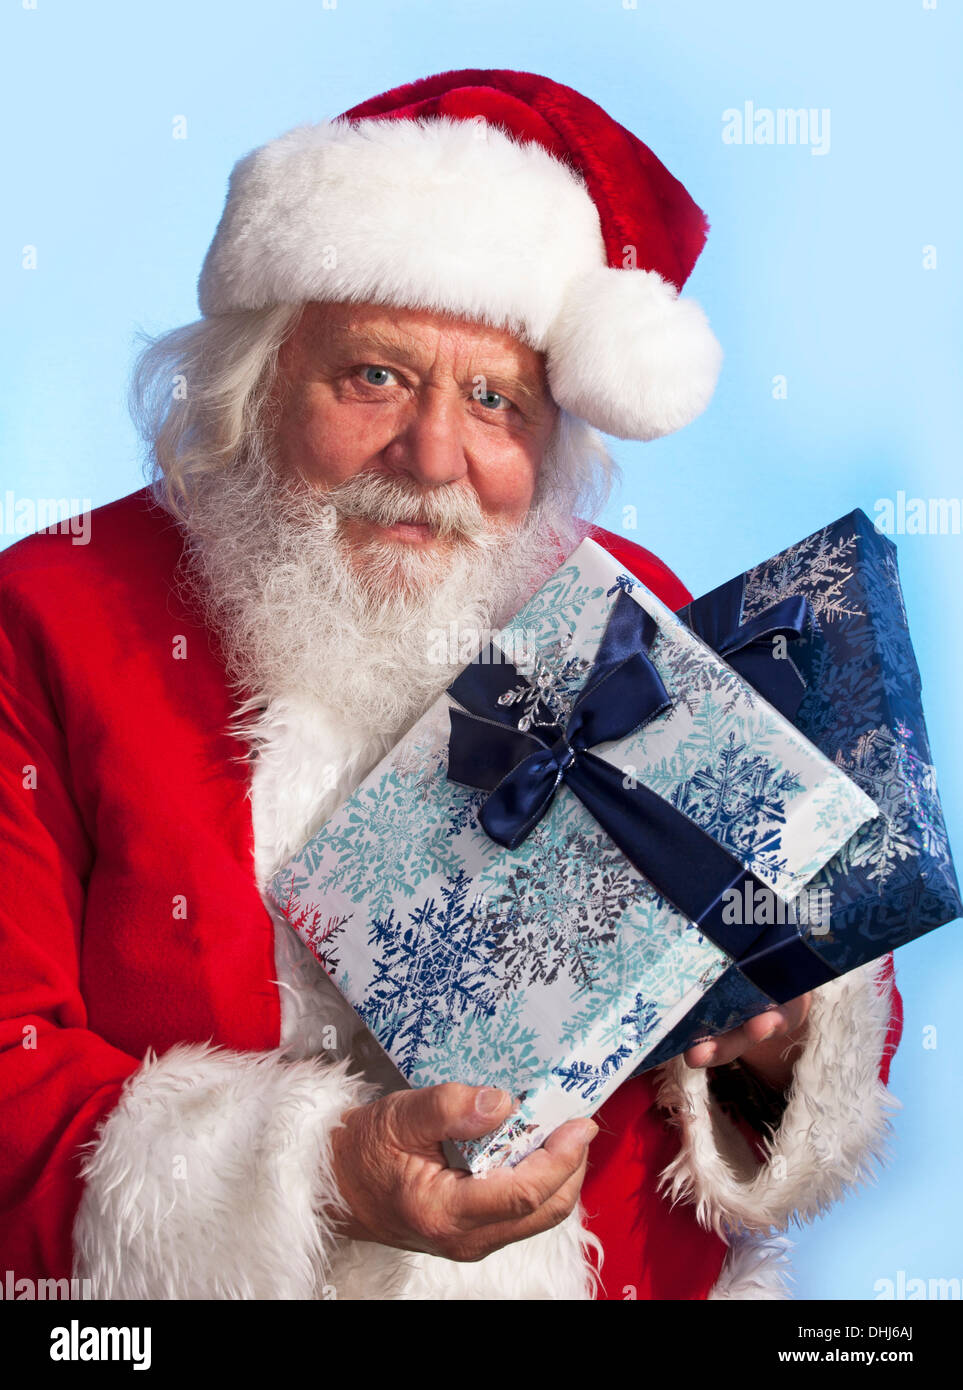 Santa Claus - Navidad la figura de Santa Claus con regalos y cajas Foto de stock